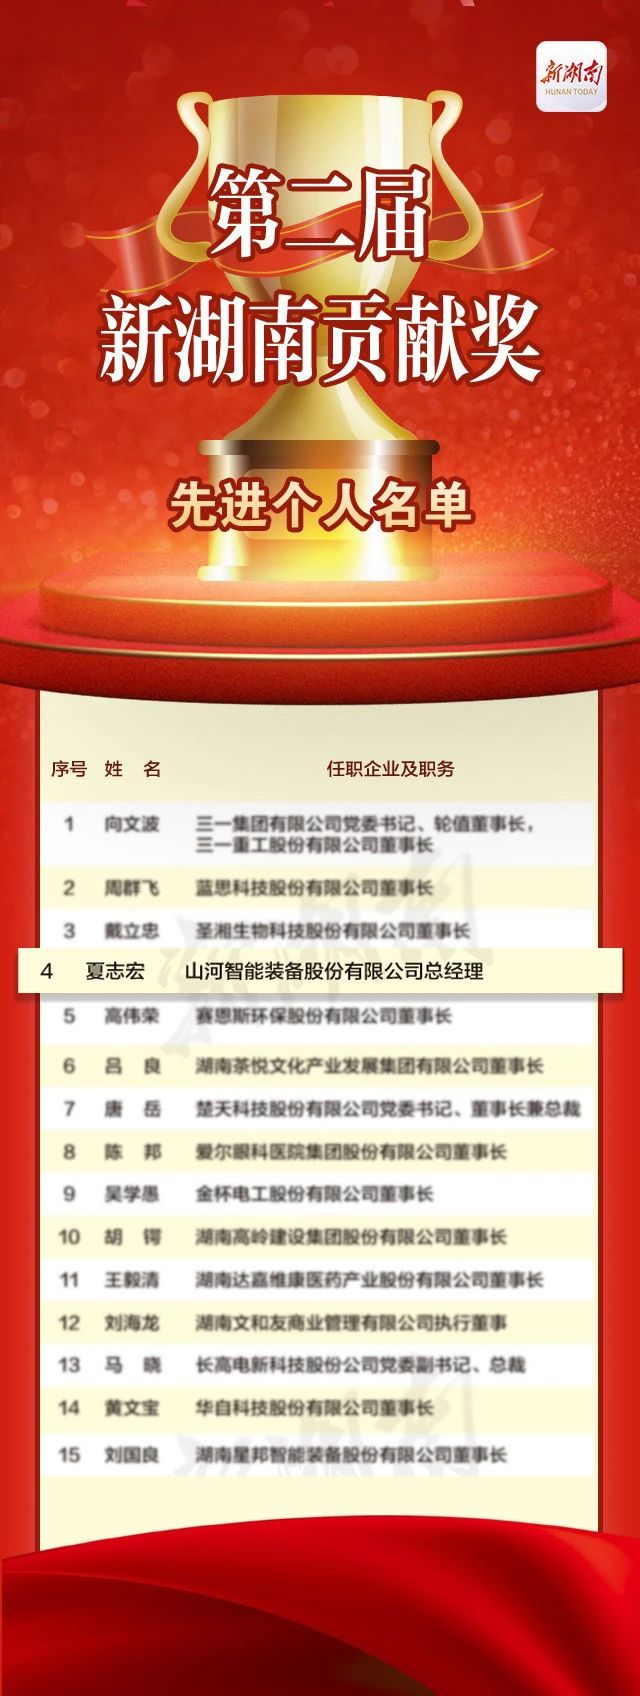 山河智能总经理夏志宏荣获“第二届新湖南贡献奖先进个人”